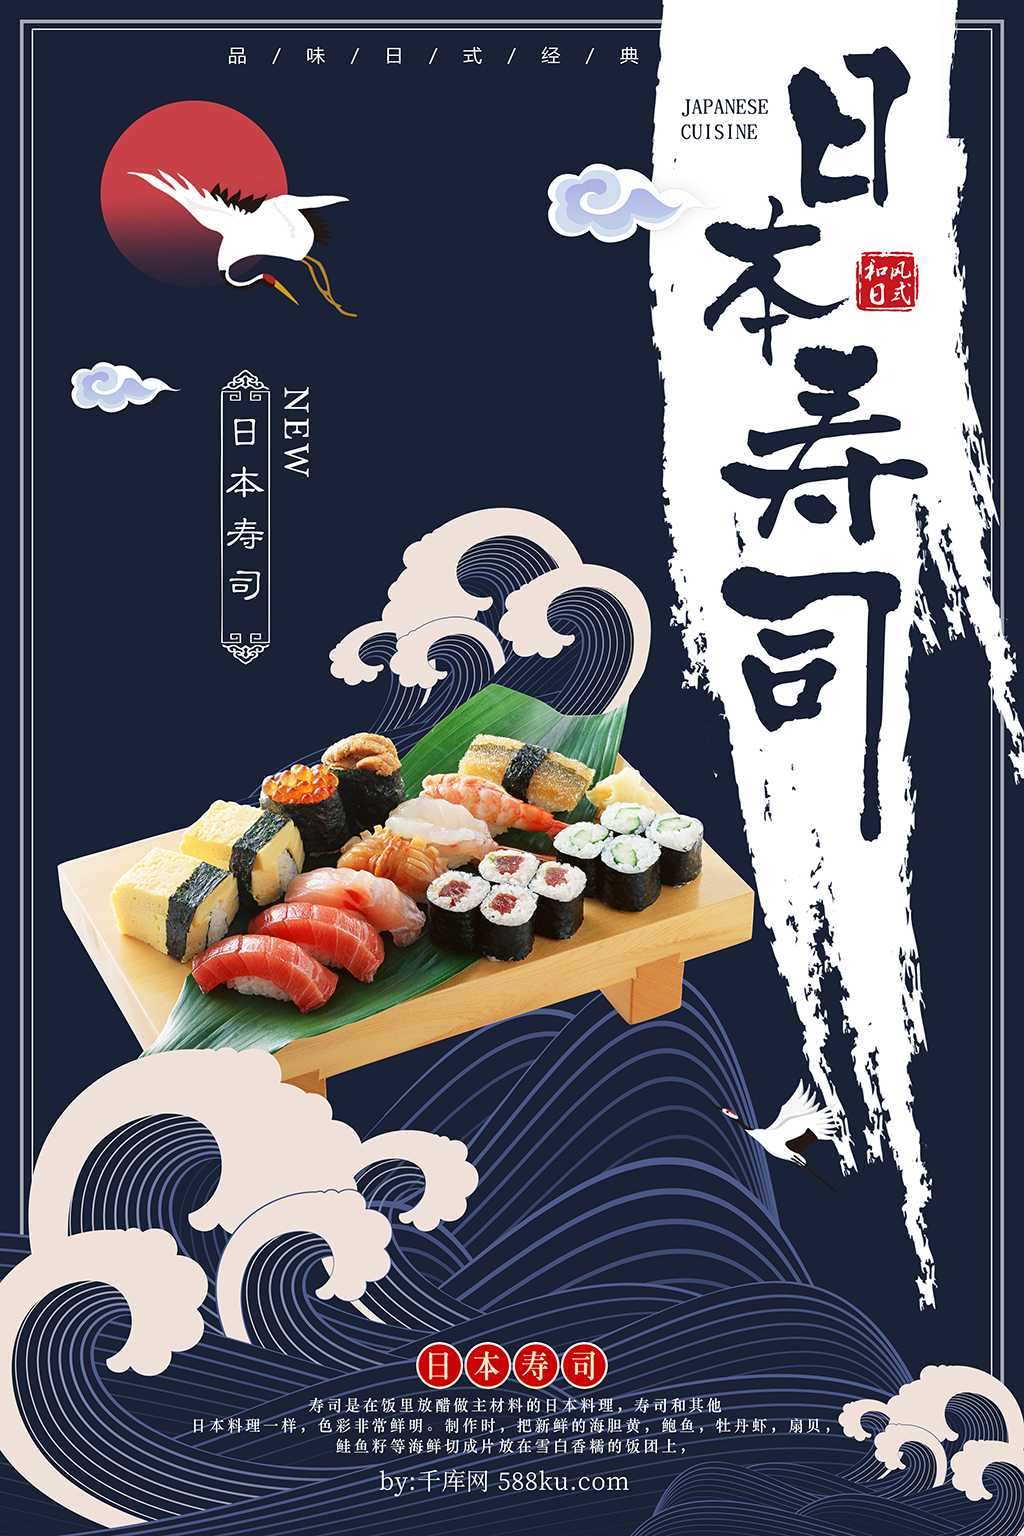 千库原创浮世绘风格日本寿司海报图片